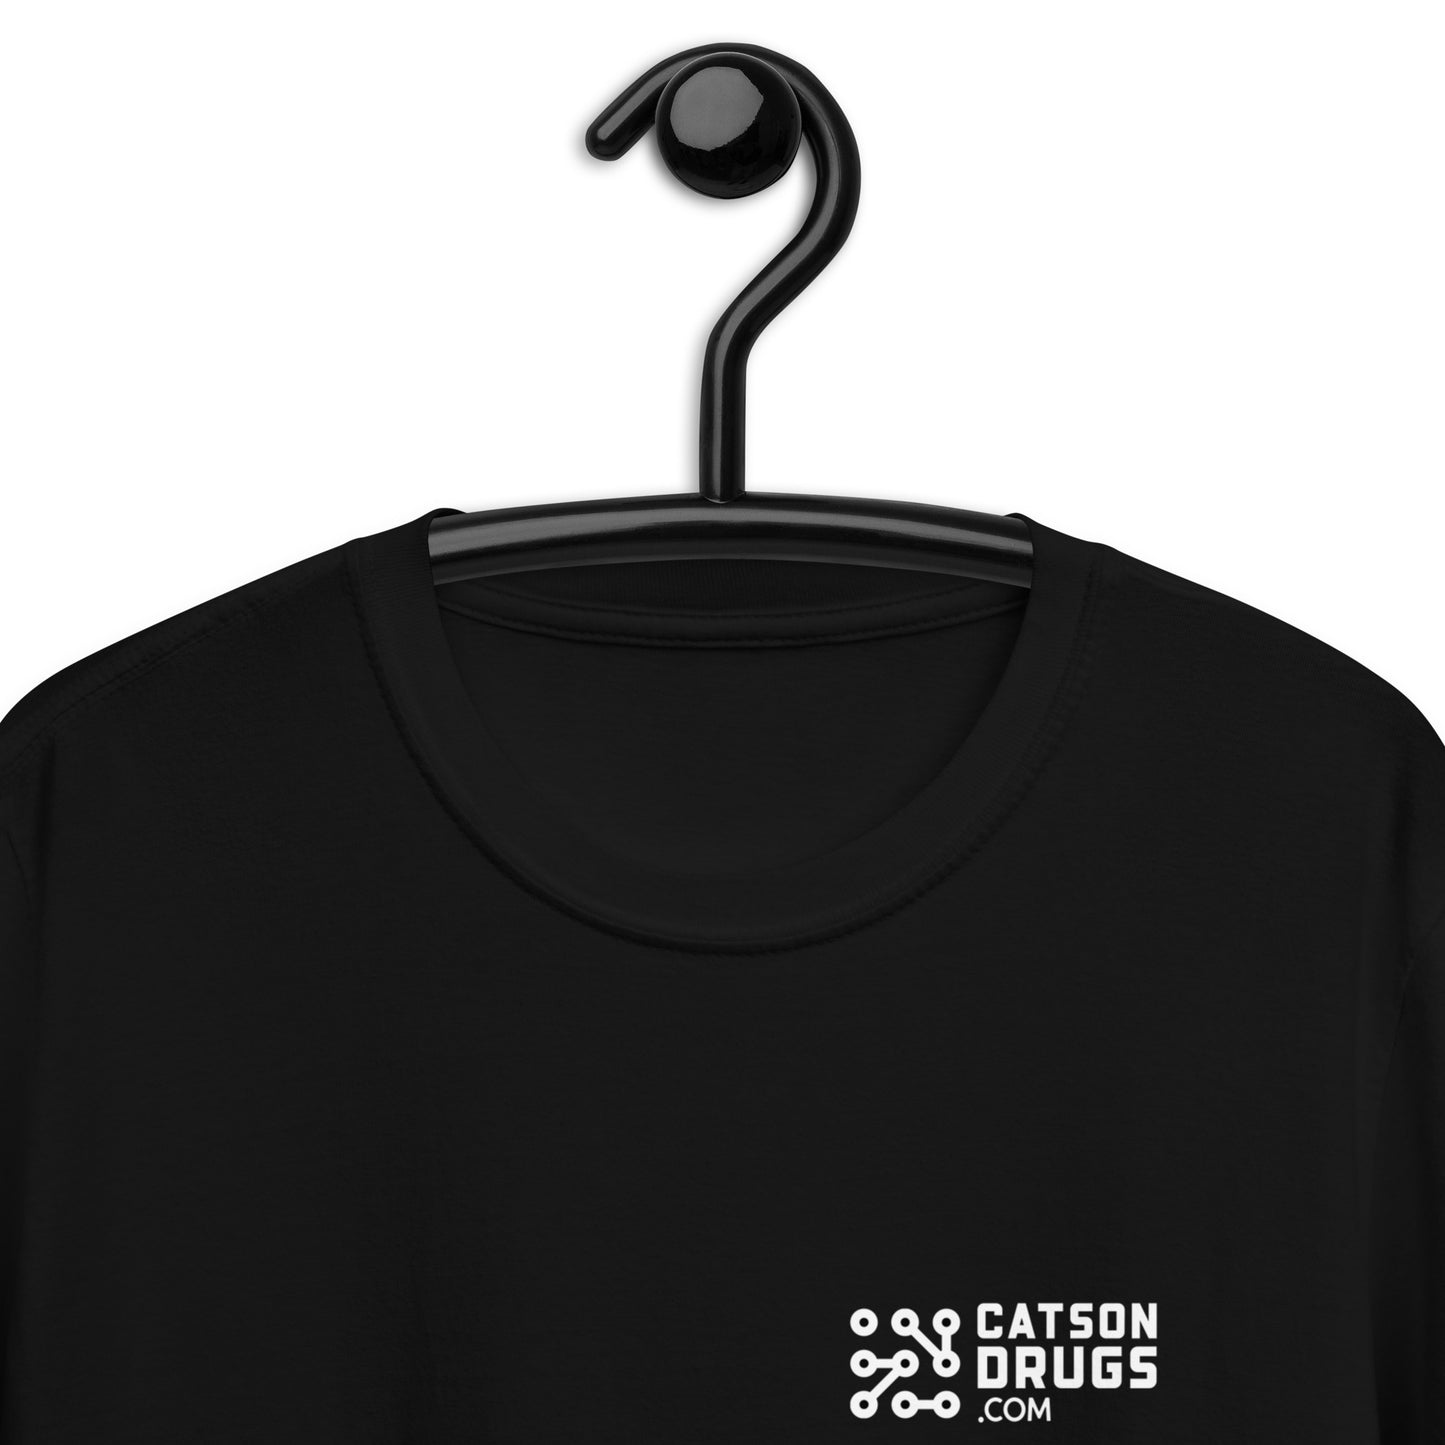 Praise the Rave  - Camiseta unisex